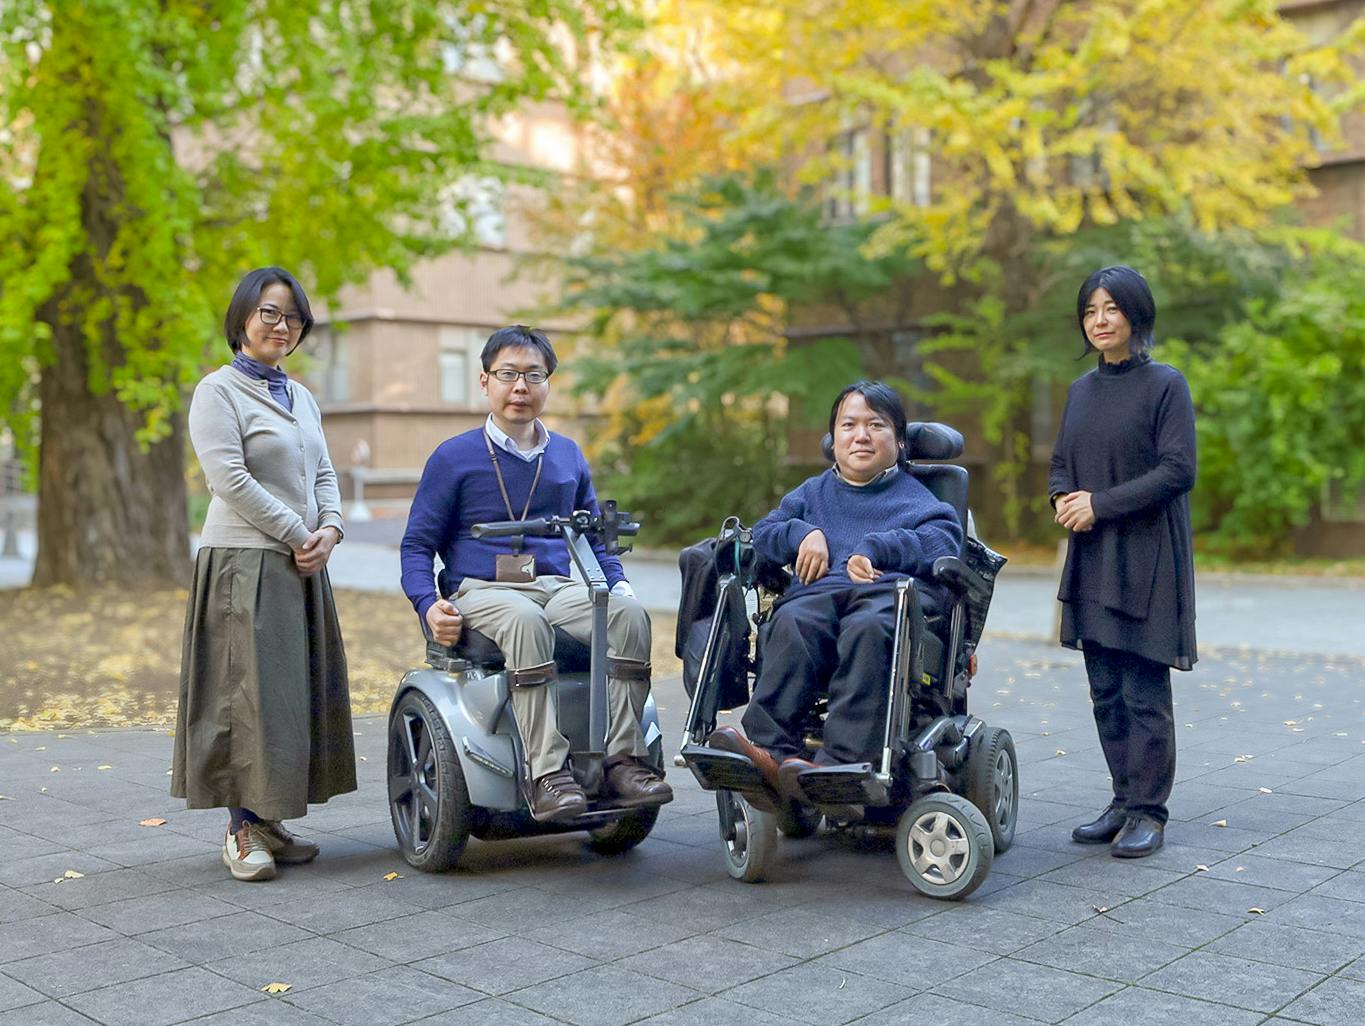 障害のある学生や研究者の活躍応援基金